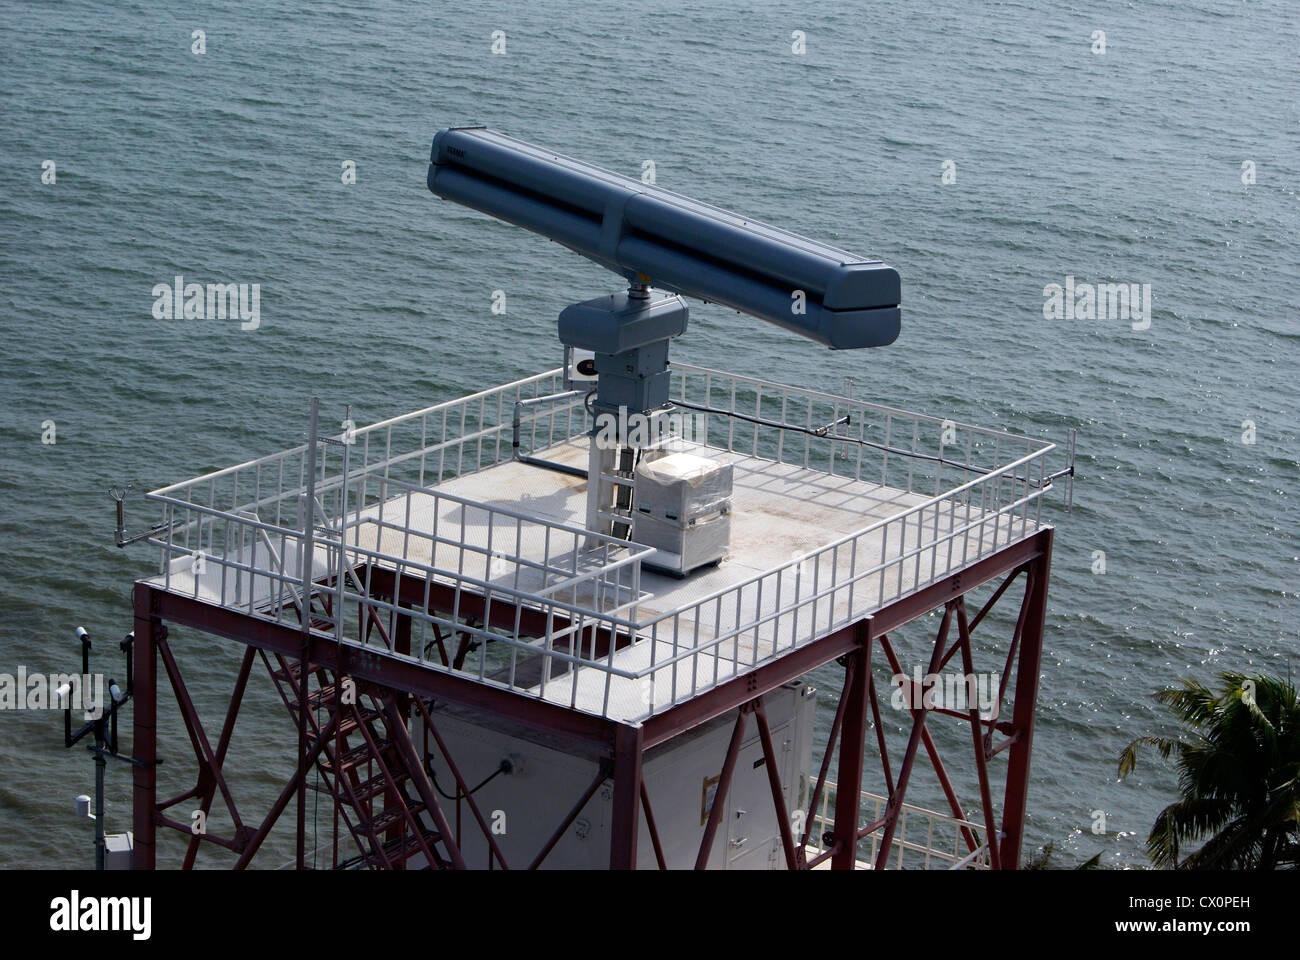 La surveillance radar moderne sur la mer d'Oman région côtière du Kerala pour la surveillance et la détection de navires bateaux pirate Banque D'Images